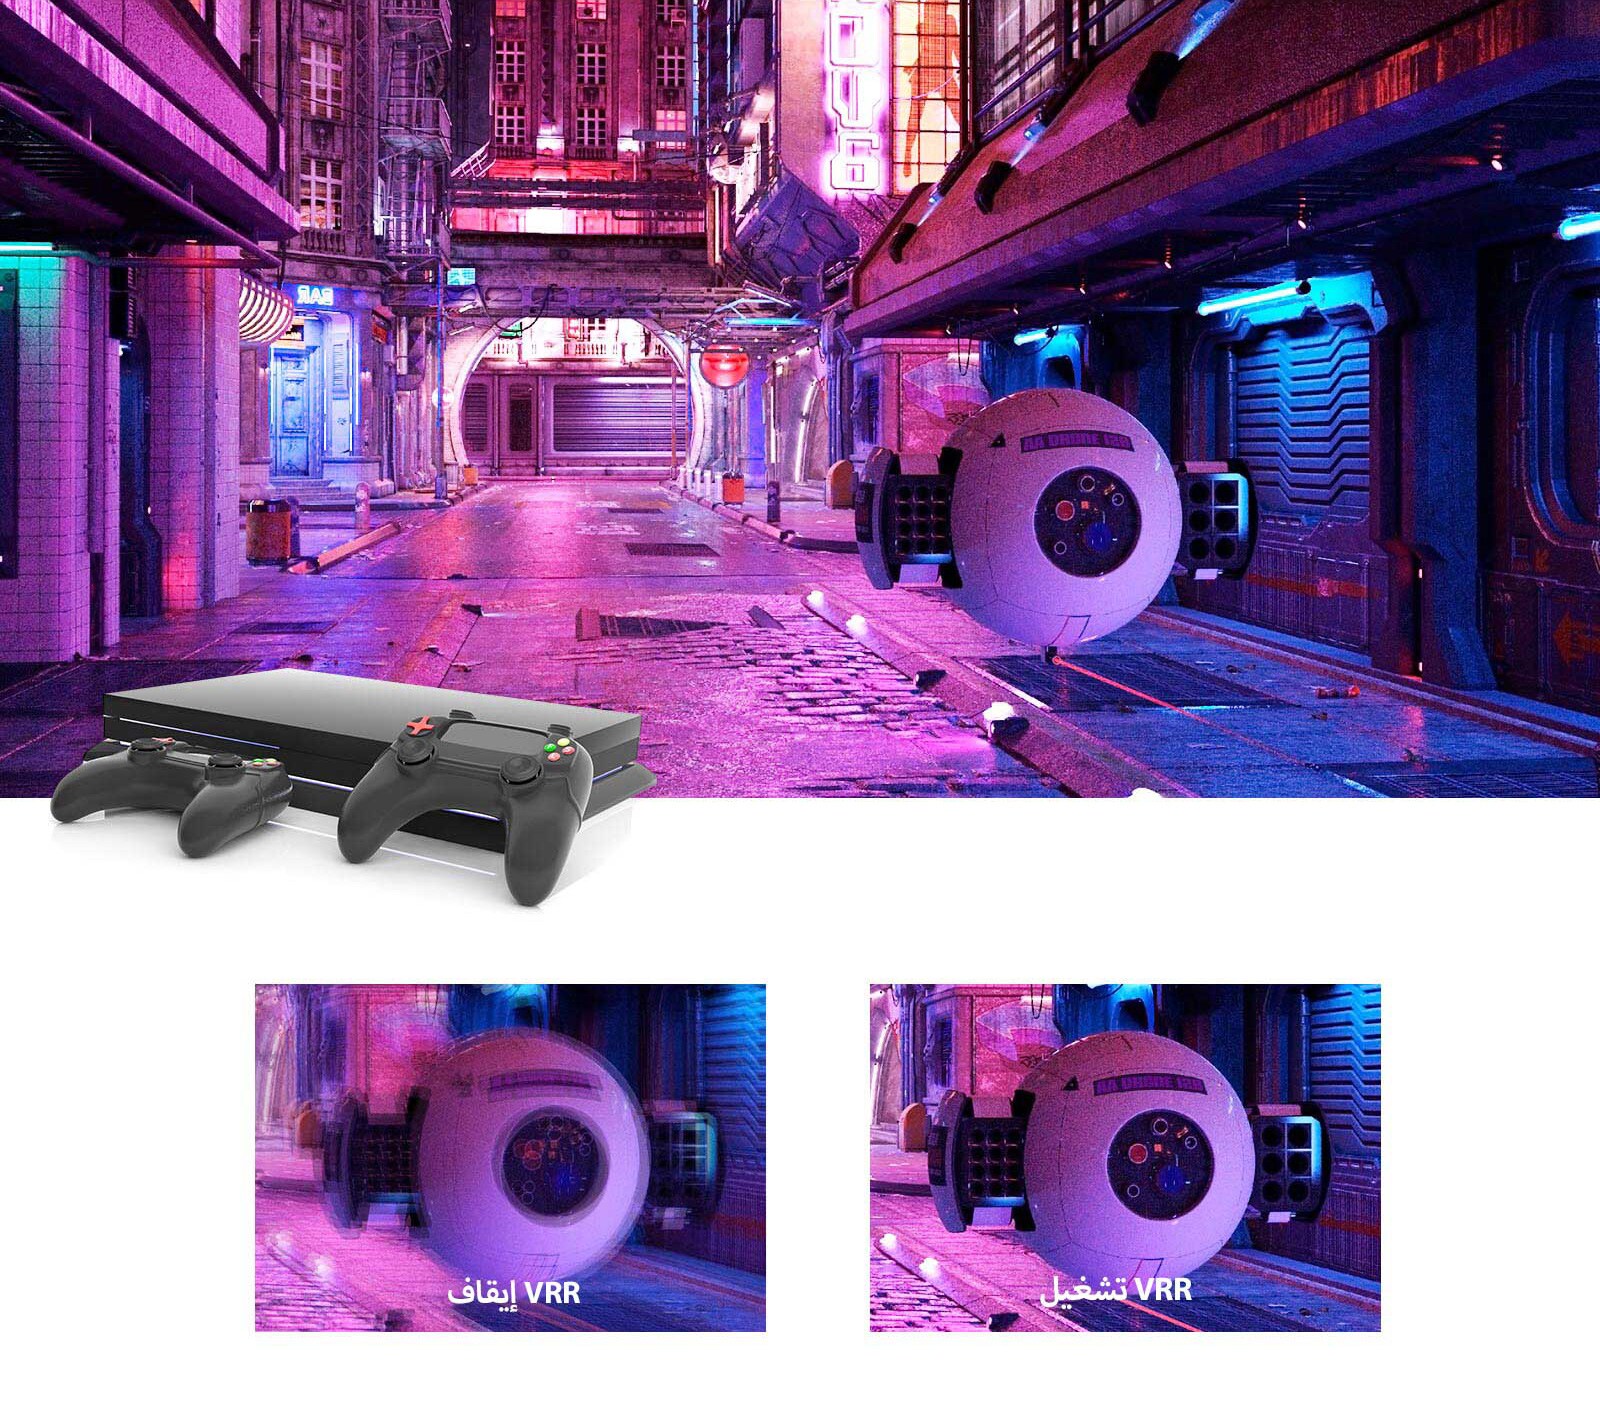 شارع مضاء باللون الوردي مع أداة روبوتية مستقبلية ووحدة تحكم في الألعاب أعلى الصورة. يوجد في الأسفل لقطتين مقربتين للأداة الروبوتية، حيث تقنية VRR متوقفة بالجانب الأيسر غير الواضح بينما تعمل VRR بالجانب الأيمن حيث الصورة الواضحة.